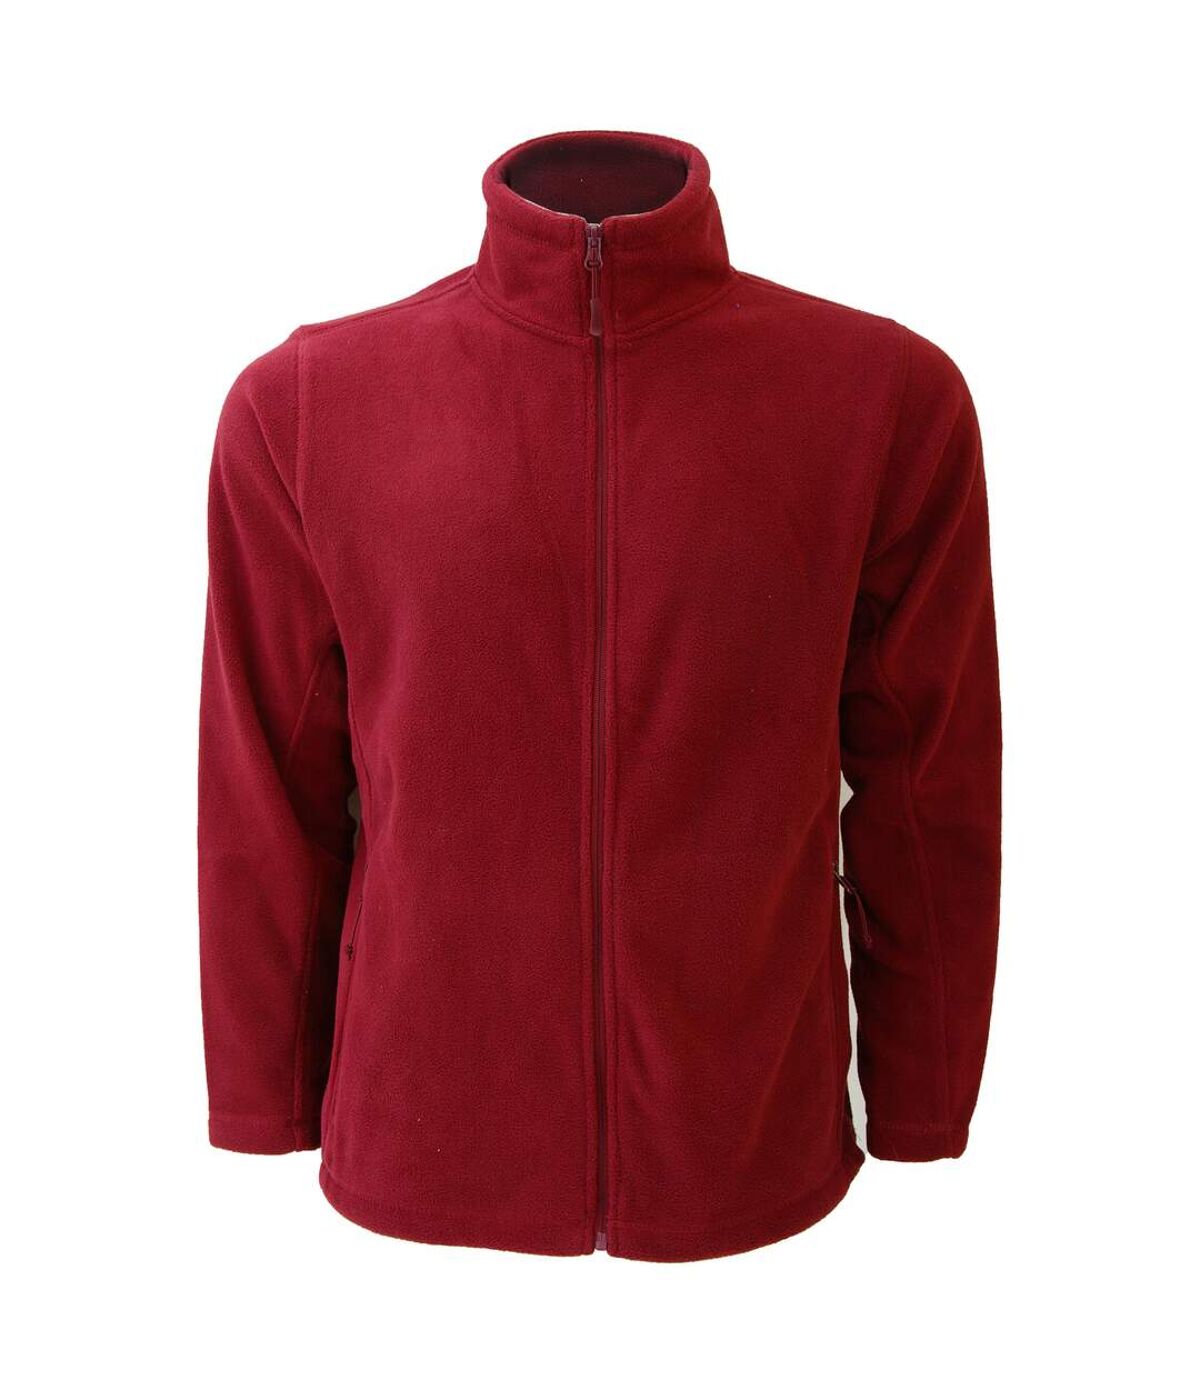 Russell Mens Full Zip Outdoor Fleece Jacket (Classic Red) - UTBC575